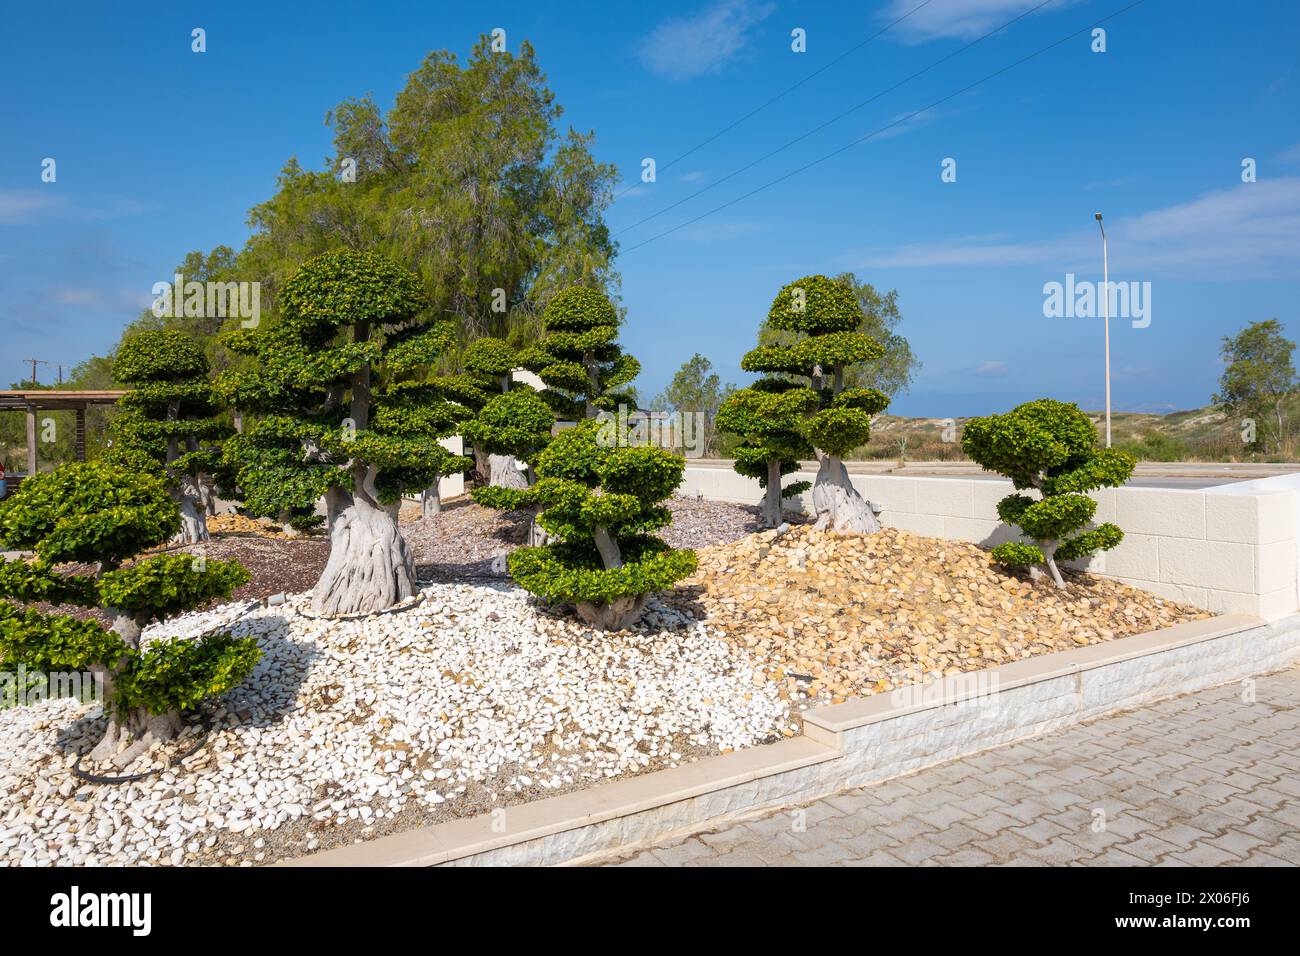 Green bonsai trees in the garden. Kos island, Greece Stock Photo